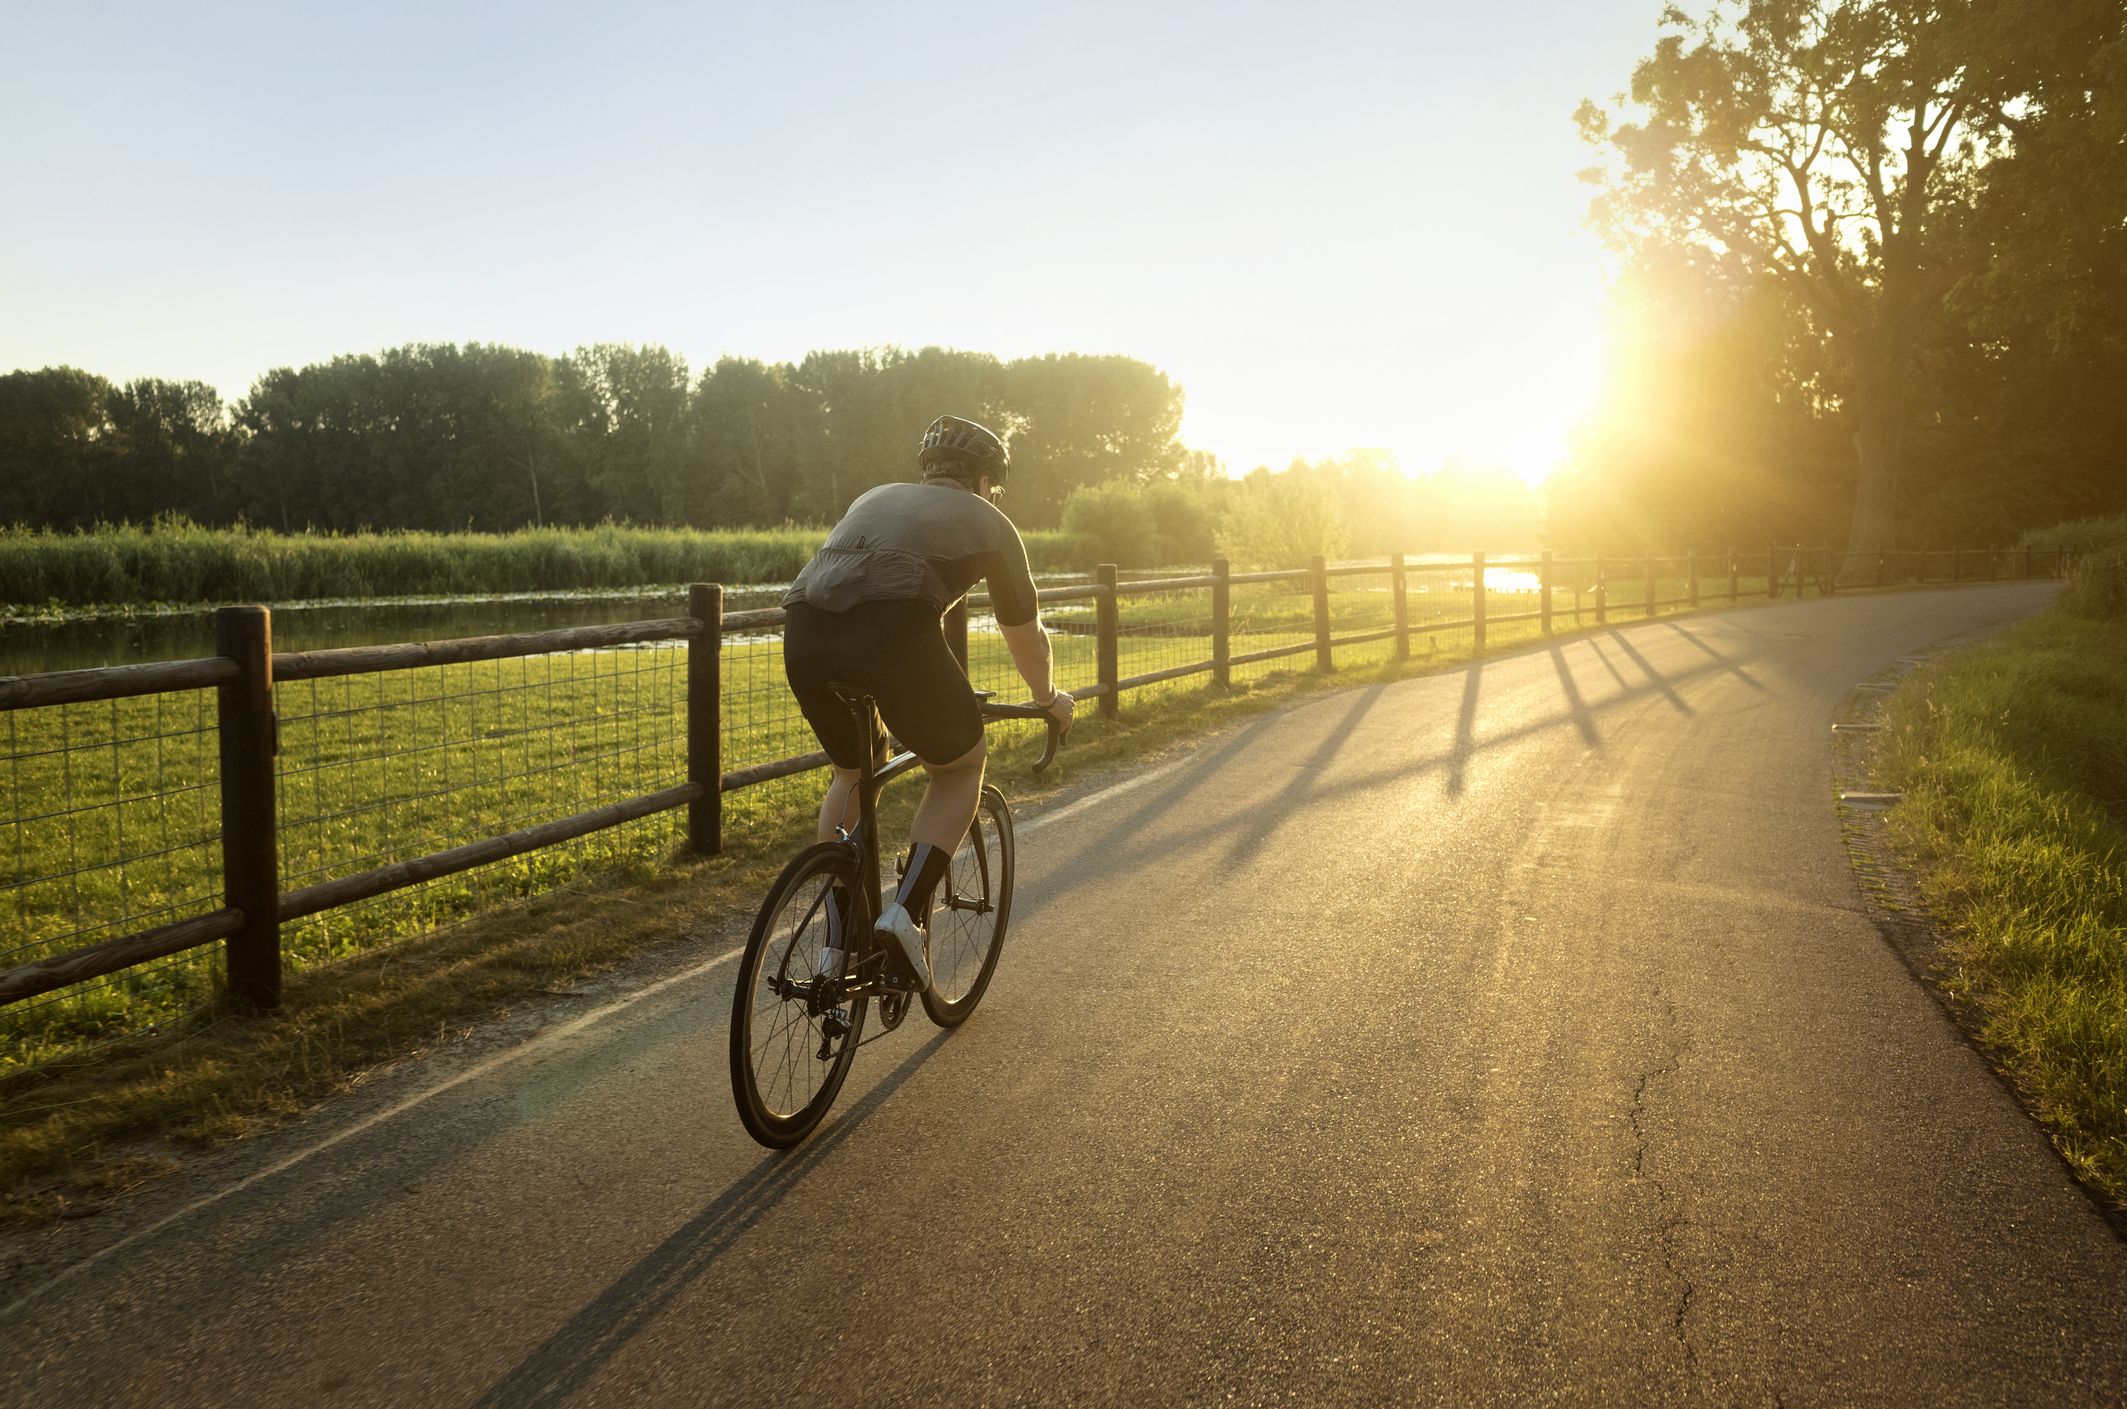 Biking & Balance: Does Riding a Bike Improve Balance?